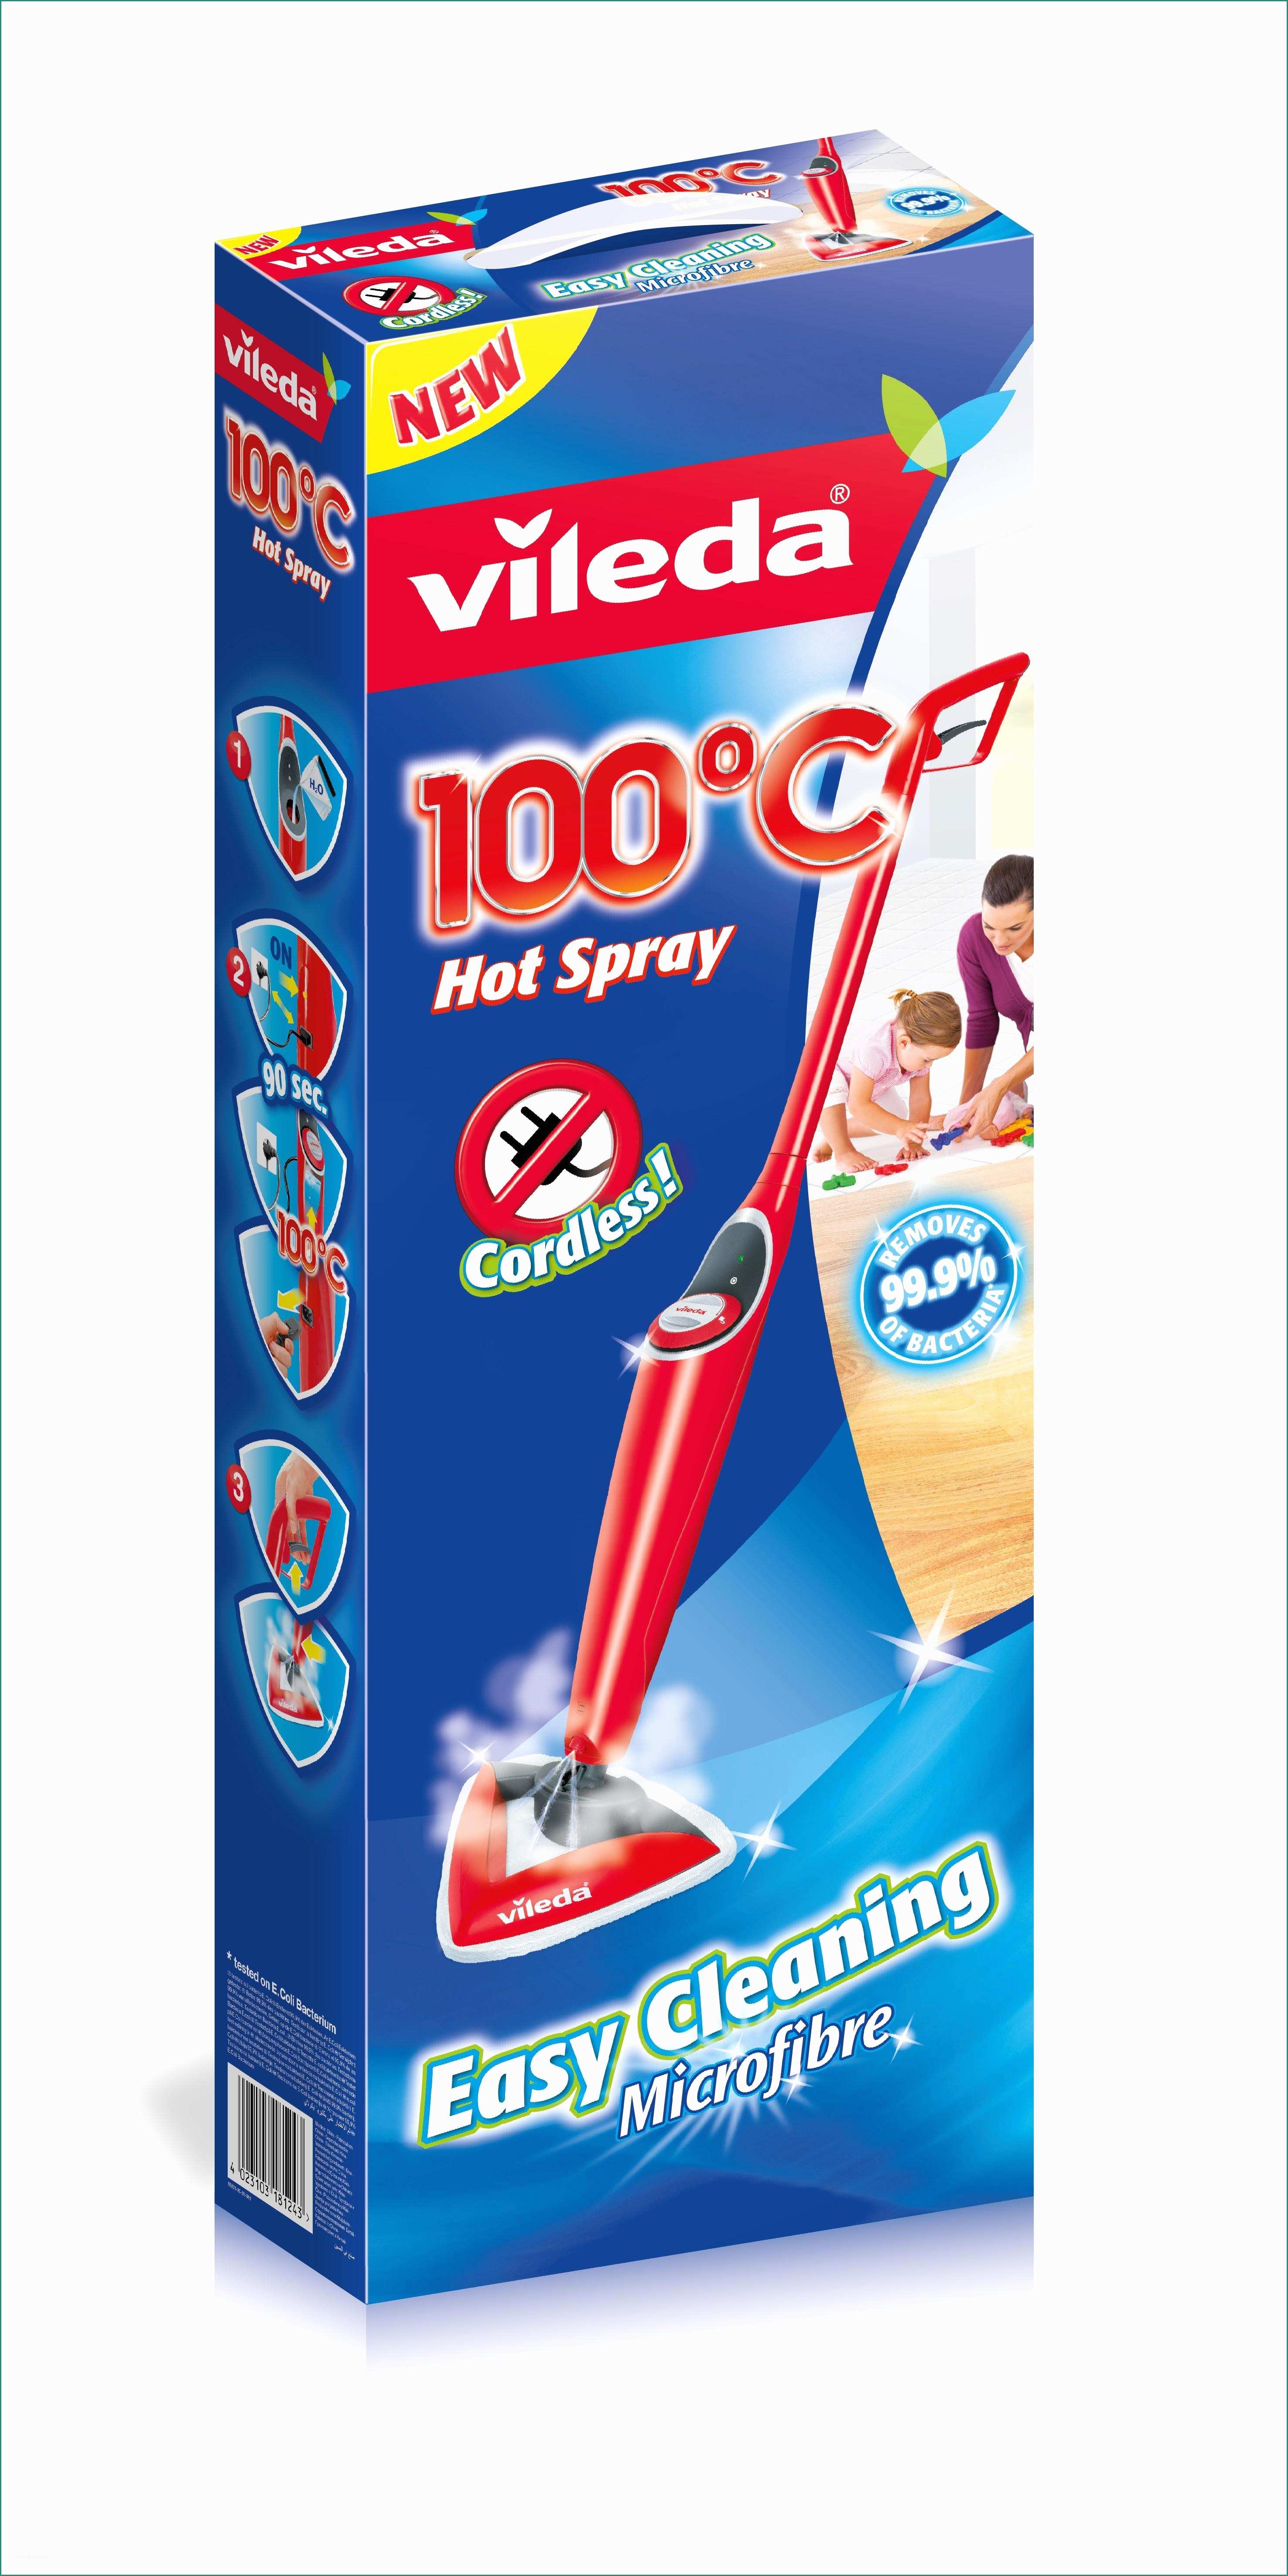 Lavapavimenti Senza Fili E Vileda 100°c Hot Spray Lavapavimenti Con Acqua Ad Alta